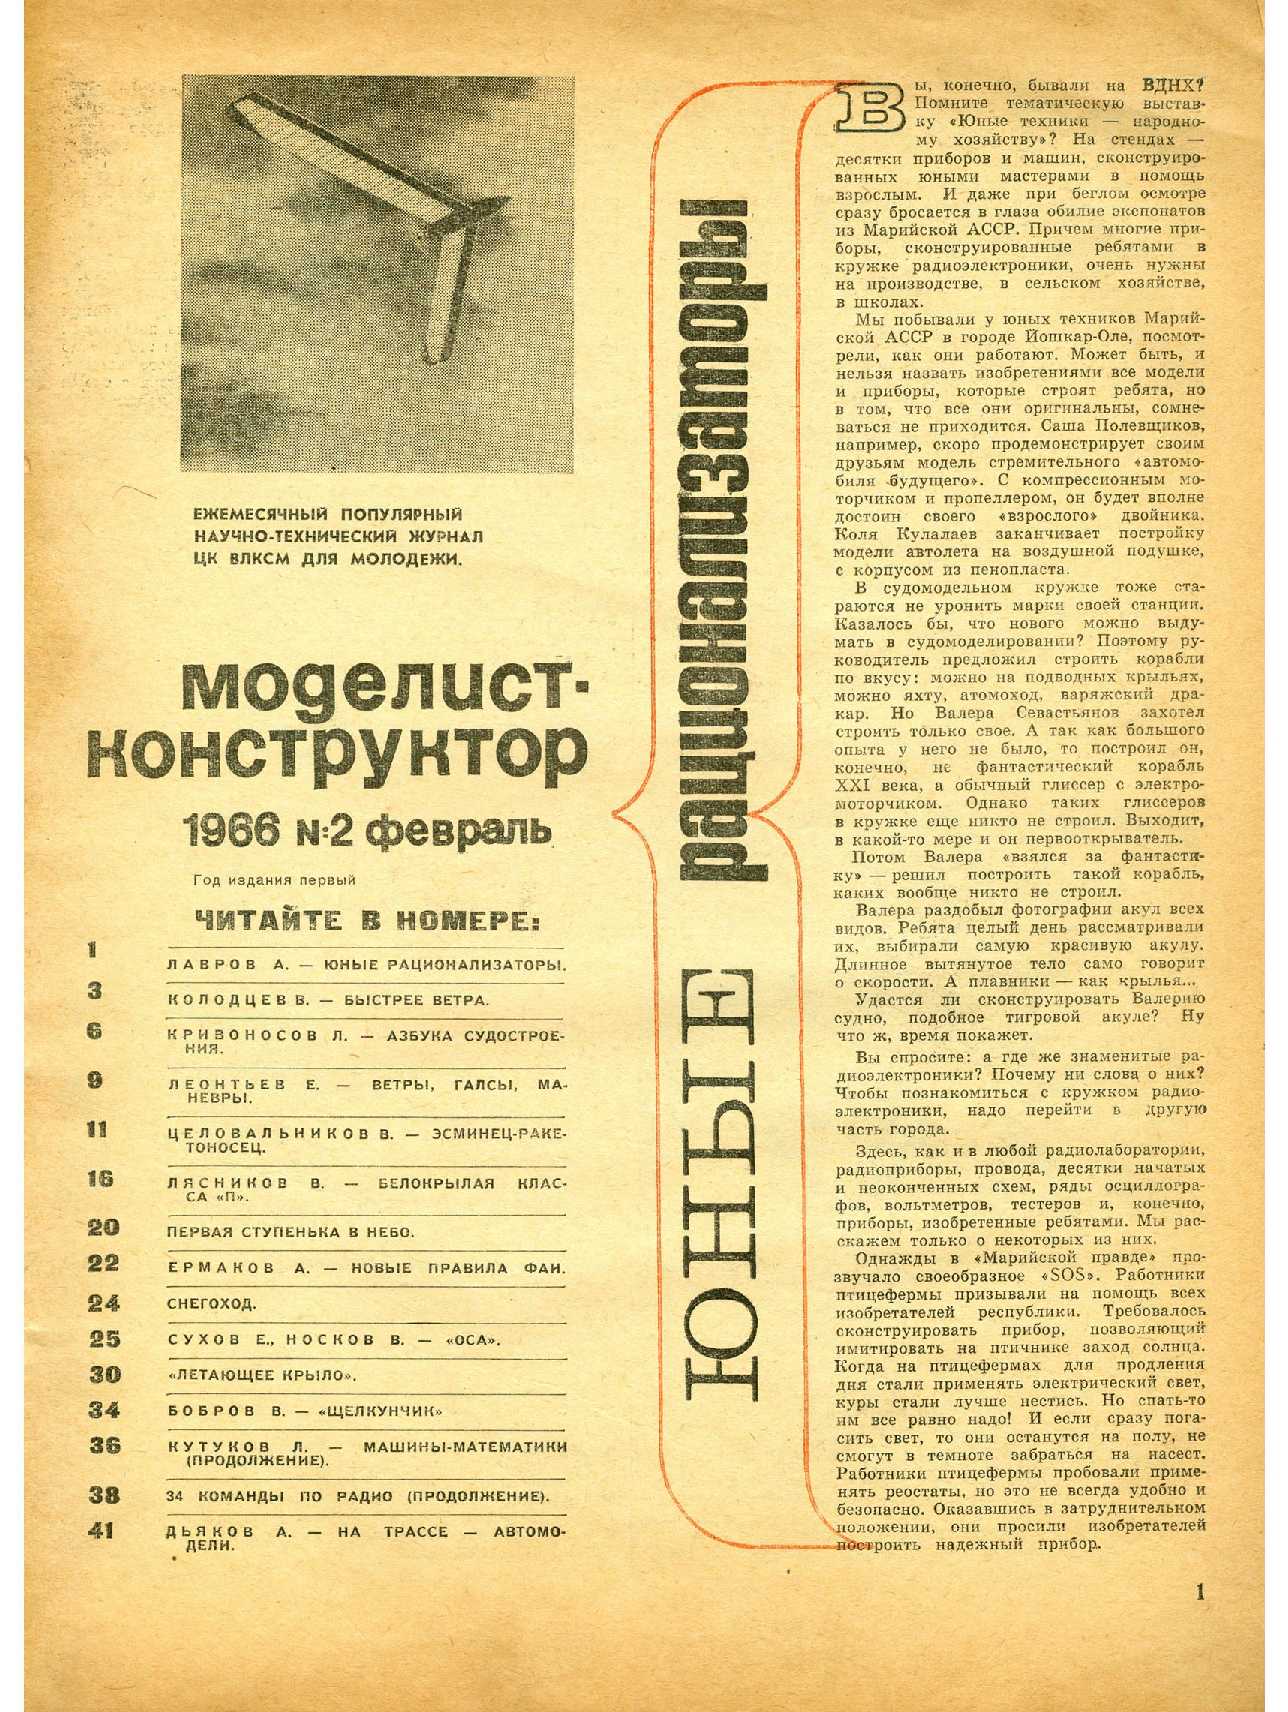 МК 2, 1966, 1 c.